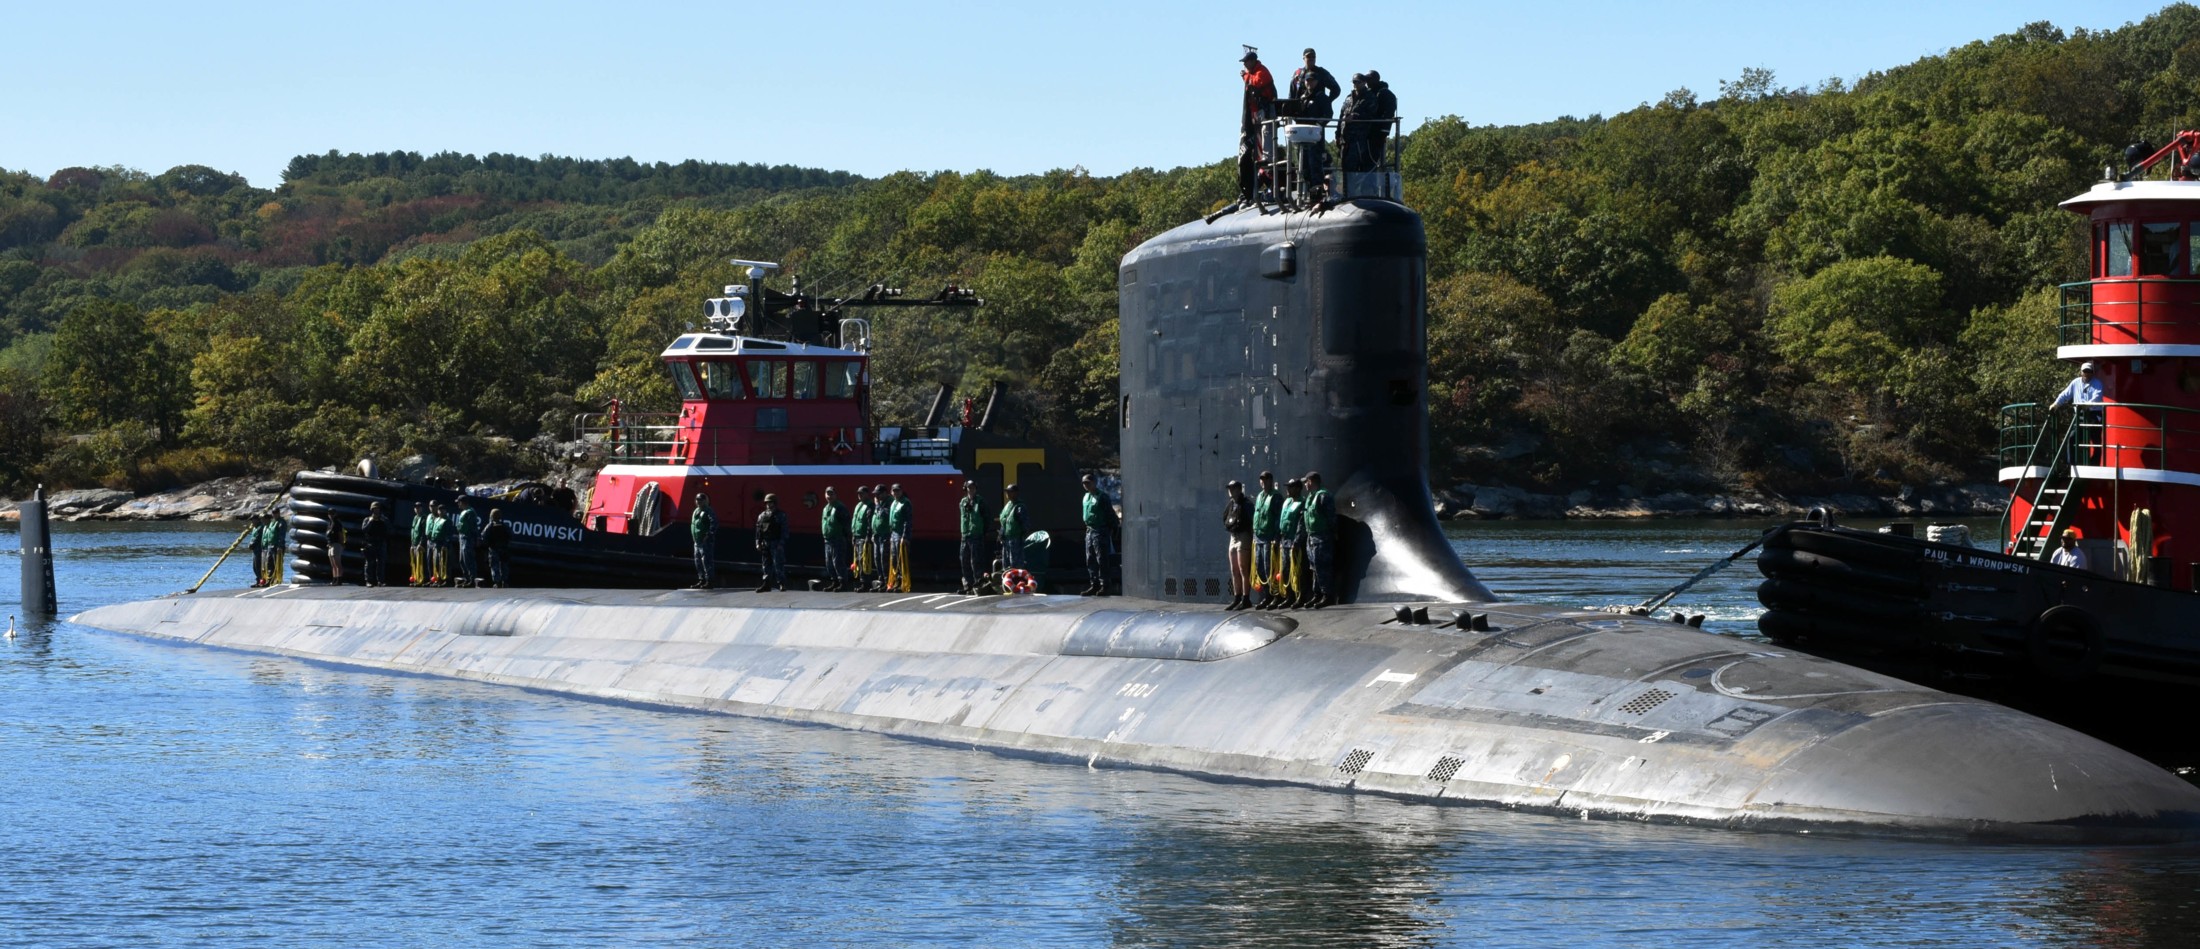 ssn-786 uss illinois virginia class attack submarine us navy 12 subase new london groton